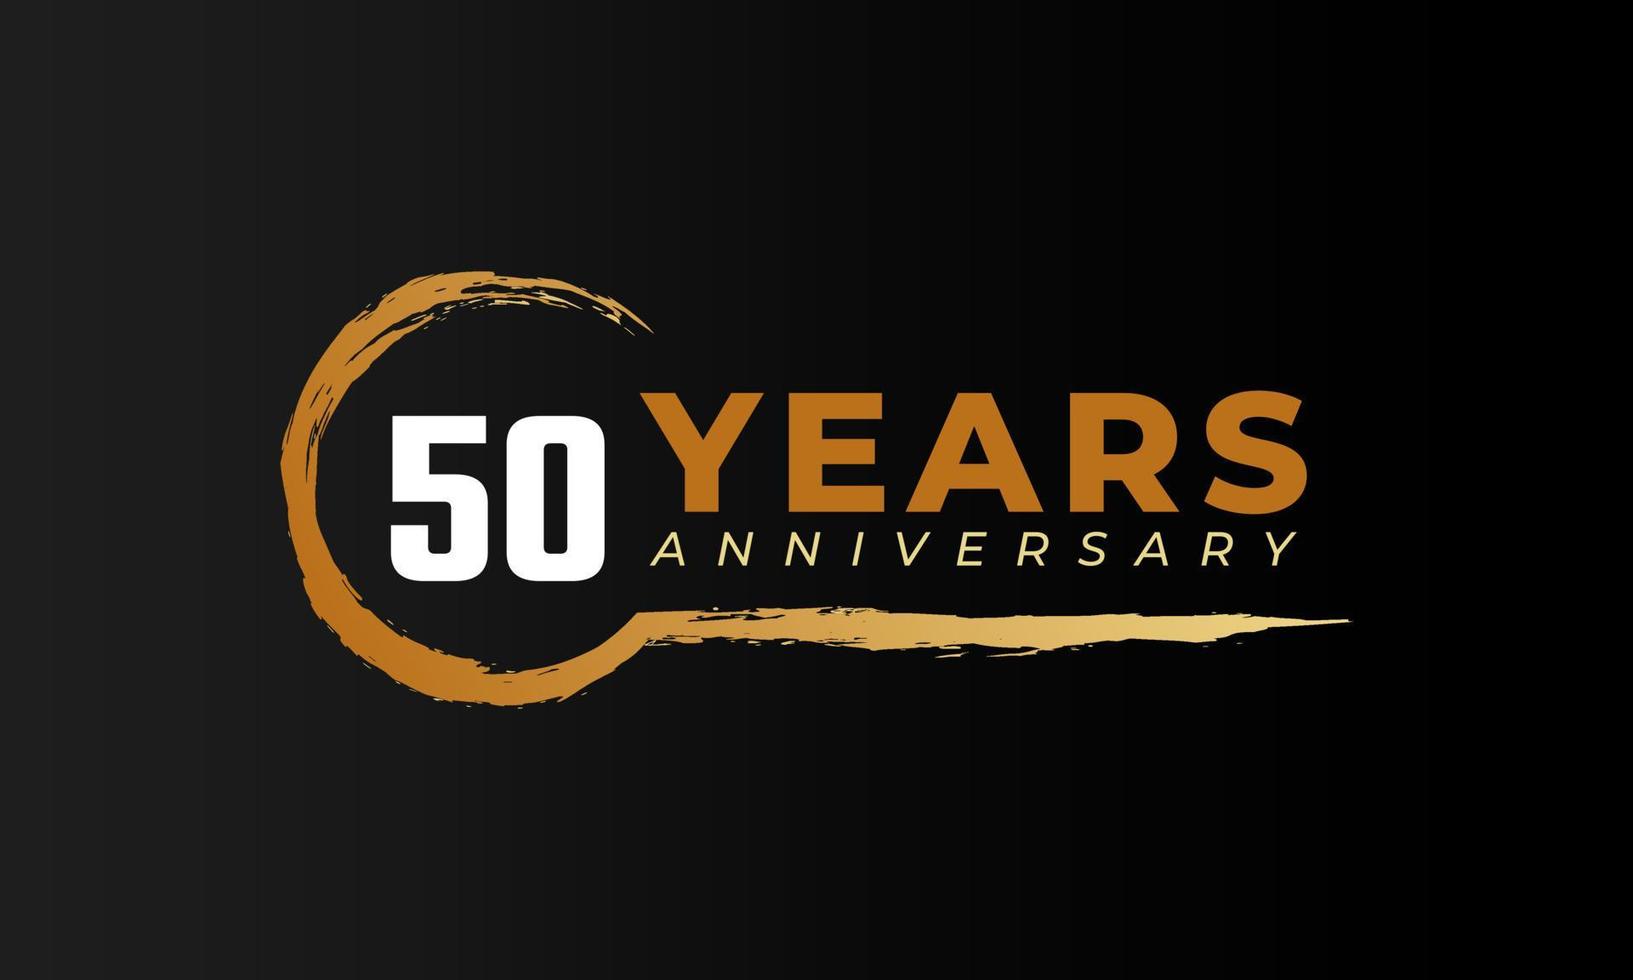 Célébration du 50e anniversaire avec une brosse circulaire de couleur dorée. joyeux anniversaire salutation célèbre l'événement isolé sur fond noir vecteur